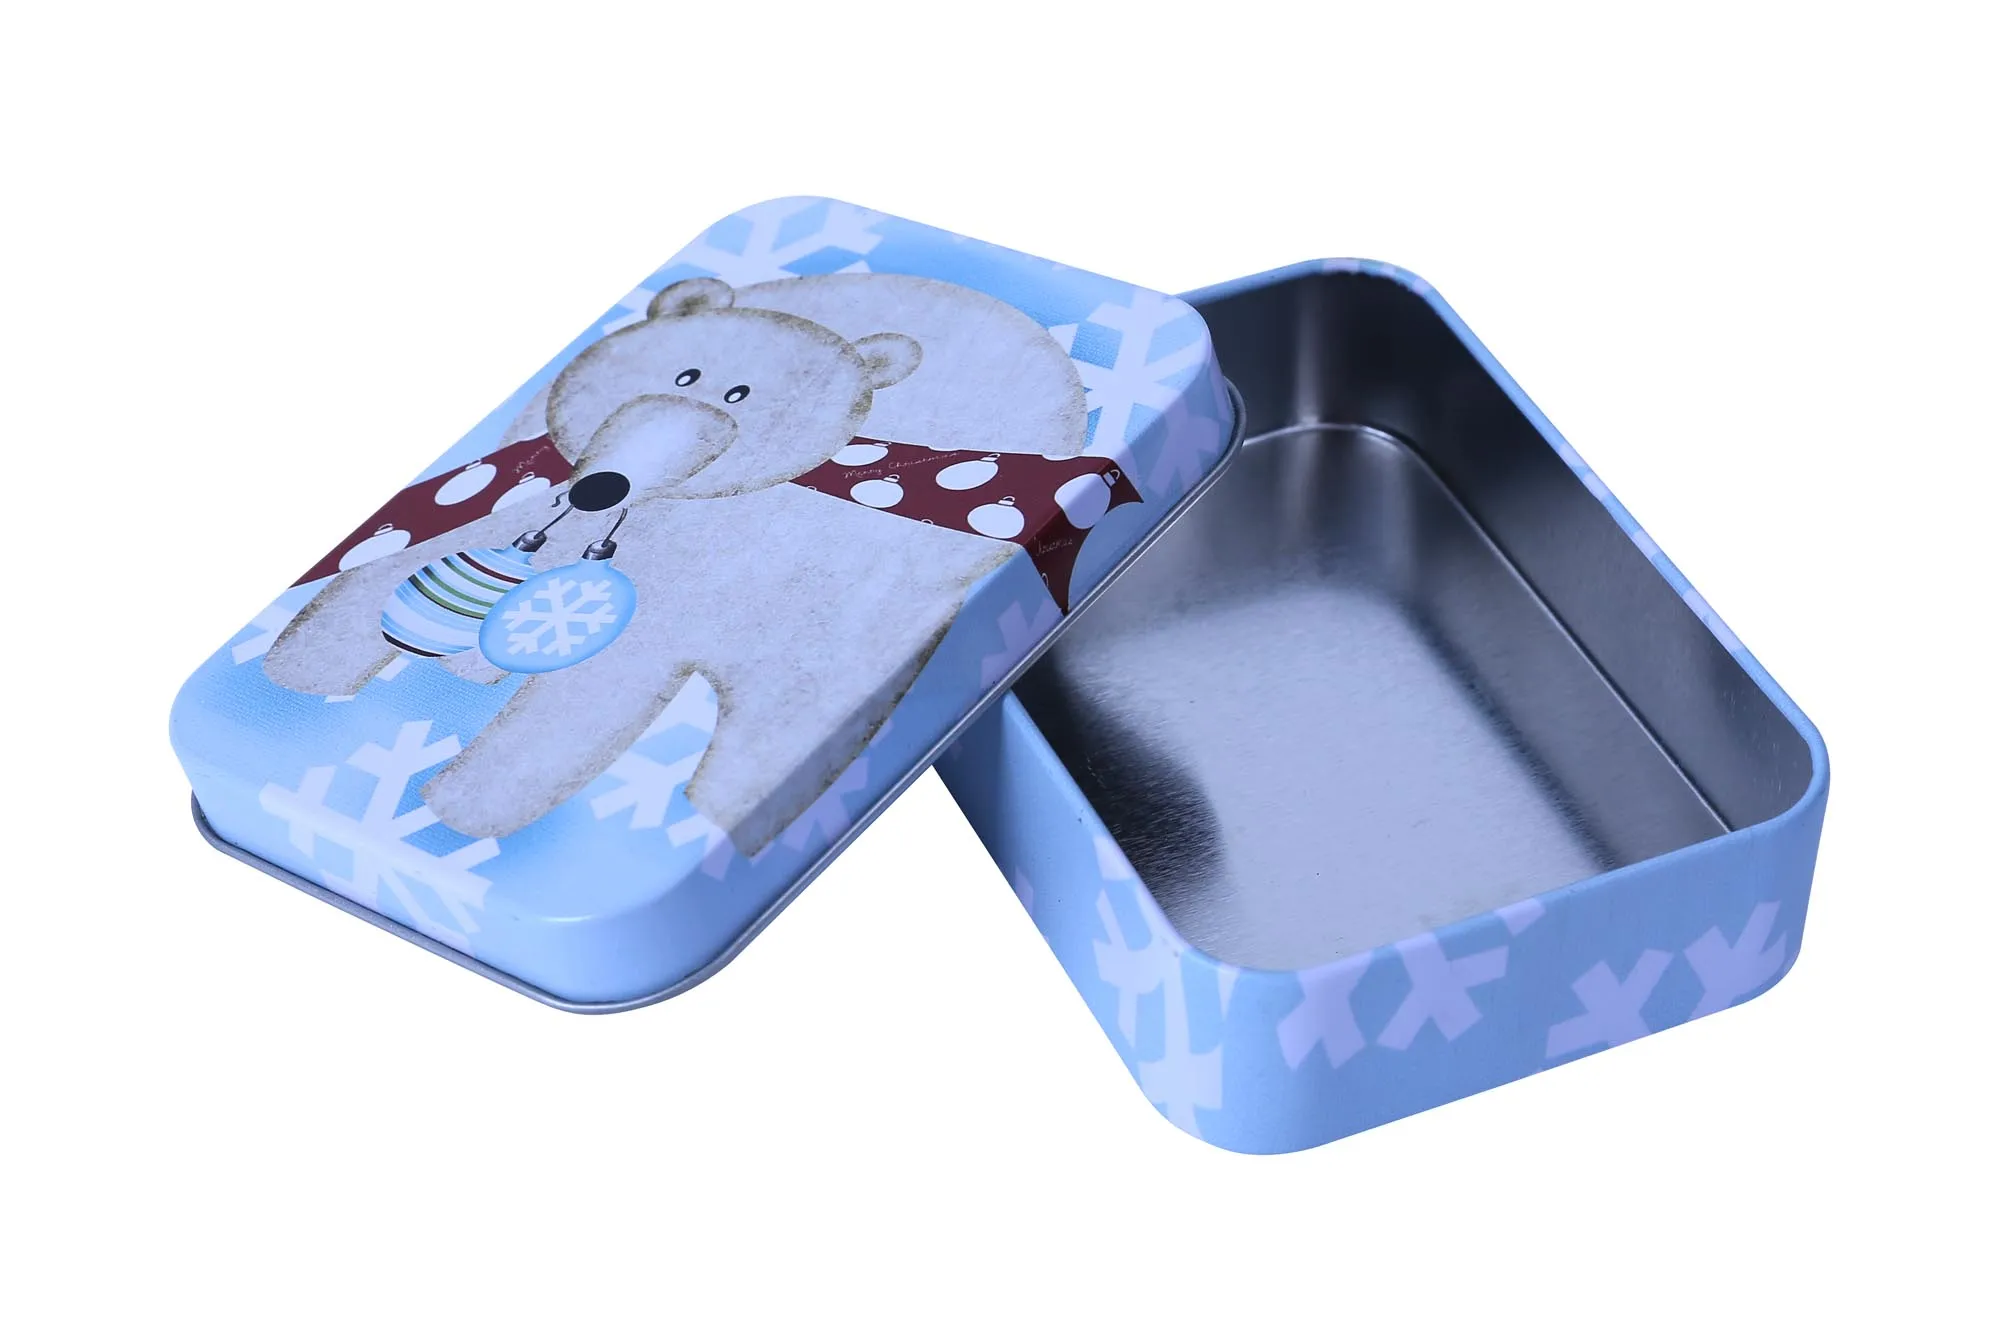 Rectangular small play card tin box with food grade material